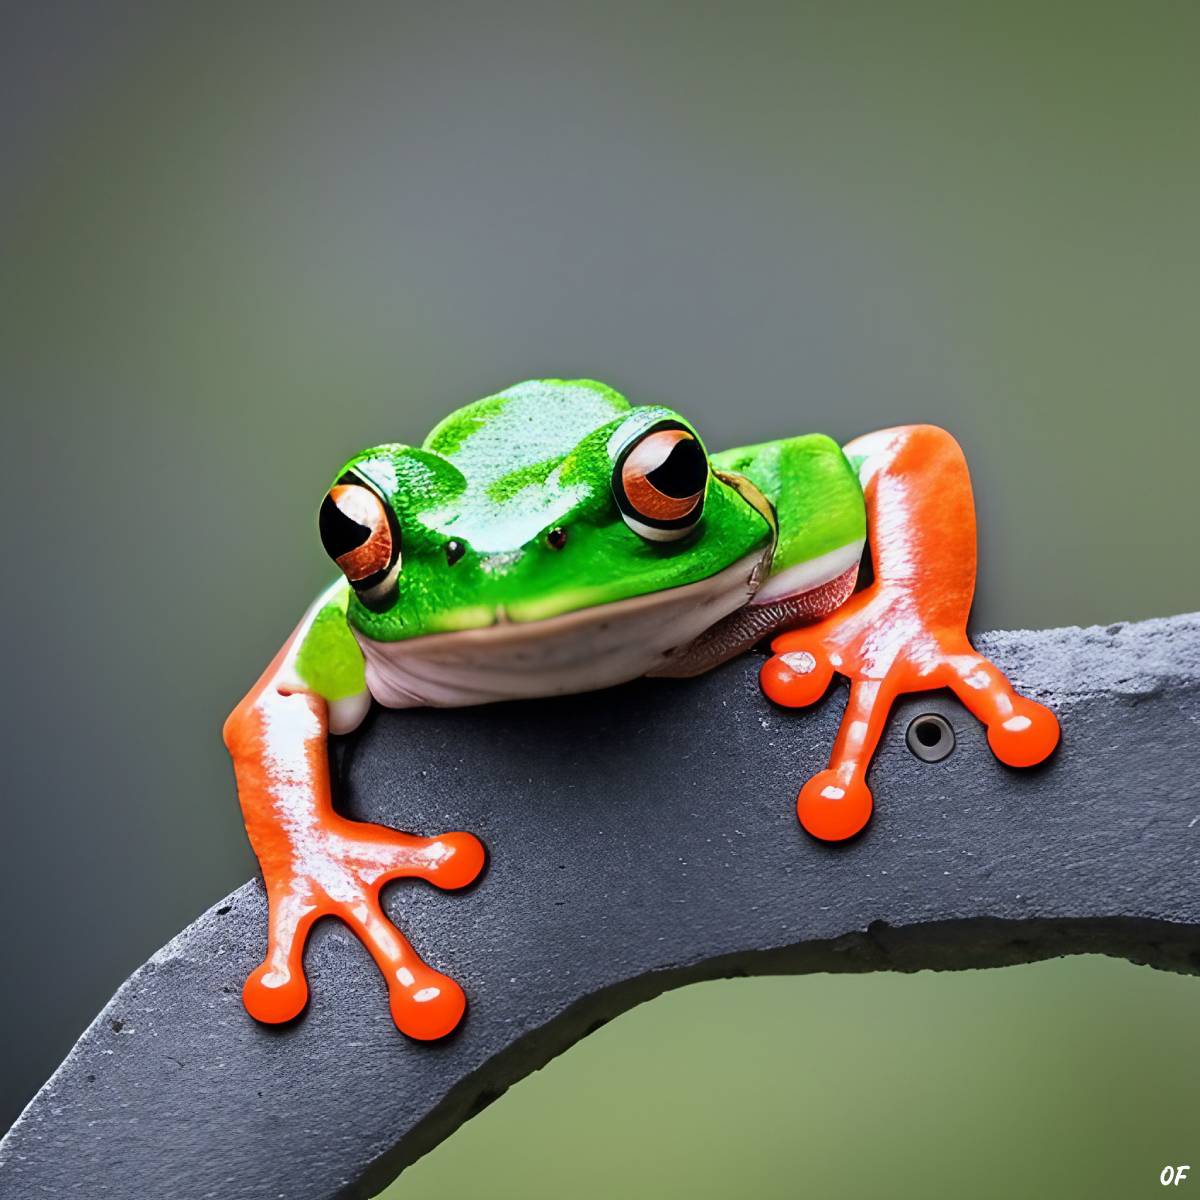 Cute frog by Odd Feed. (© Odd Feed)